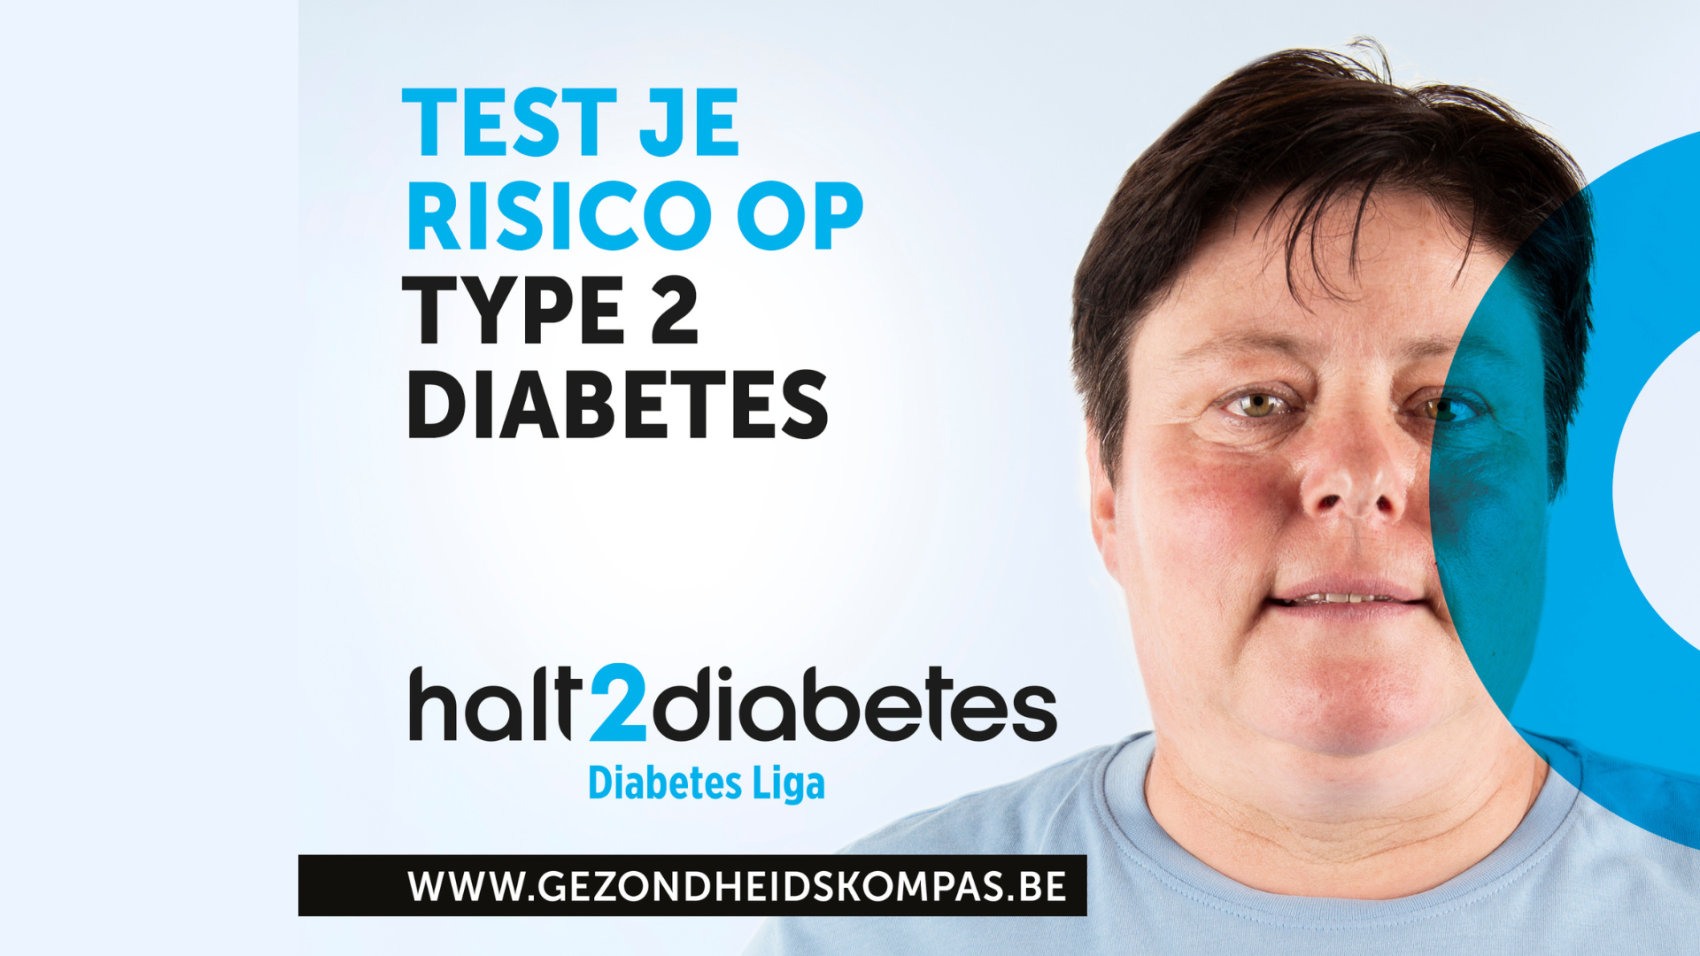 Campagnebeeld halt2diabetes